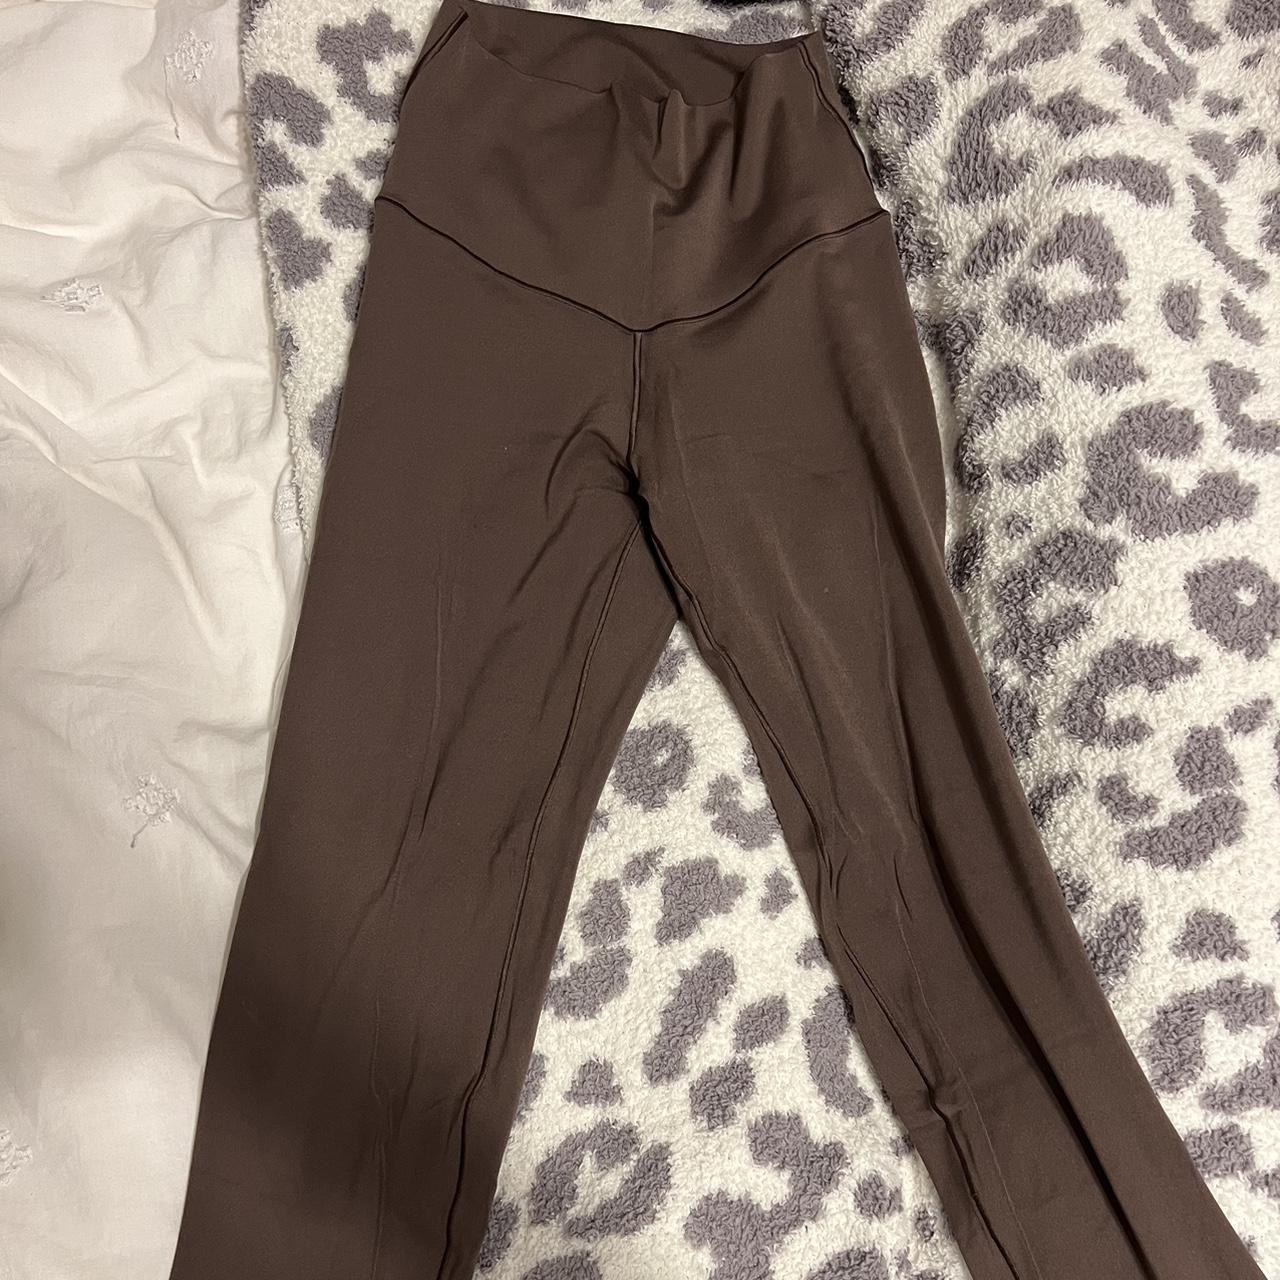 Aerie chocolate brown Offline leggings